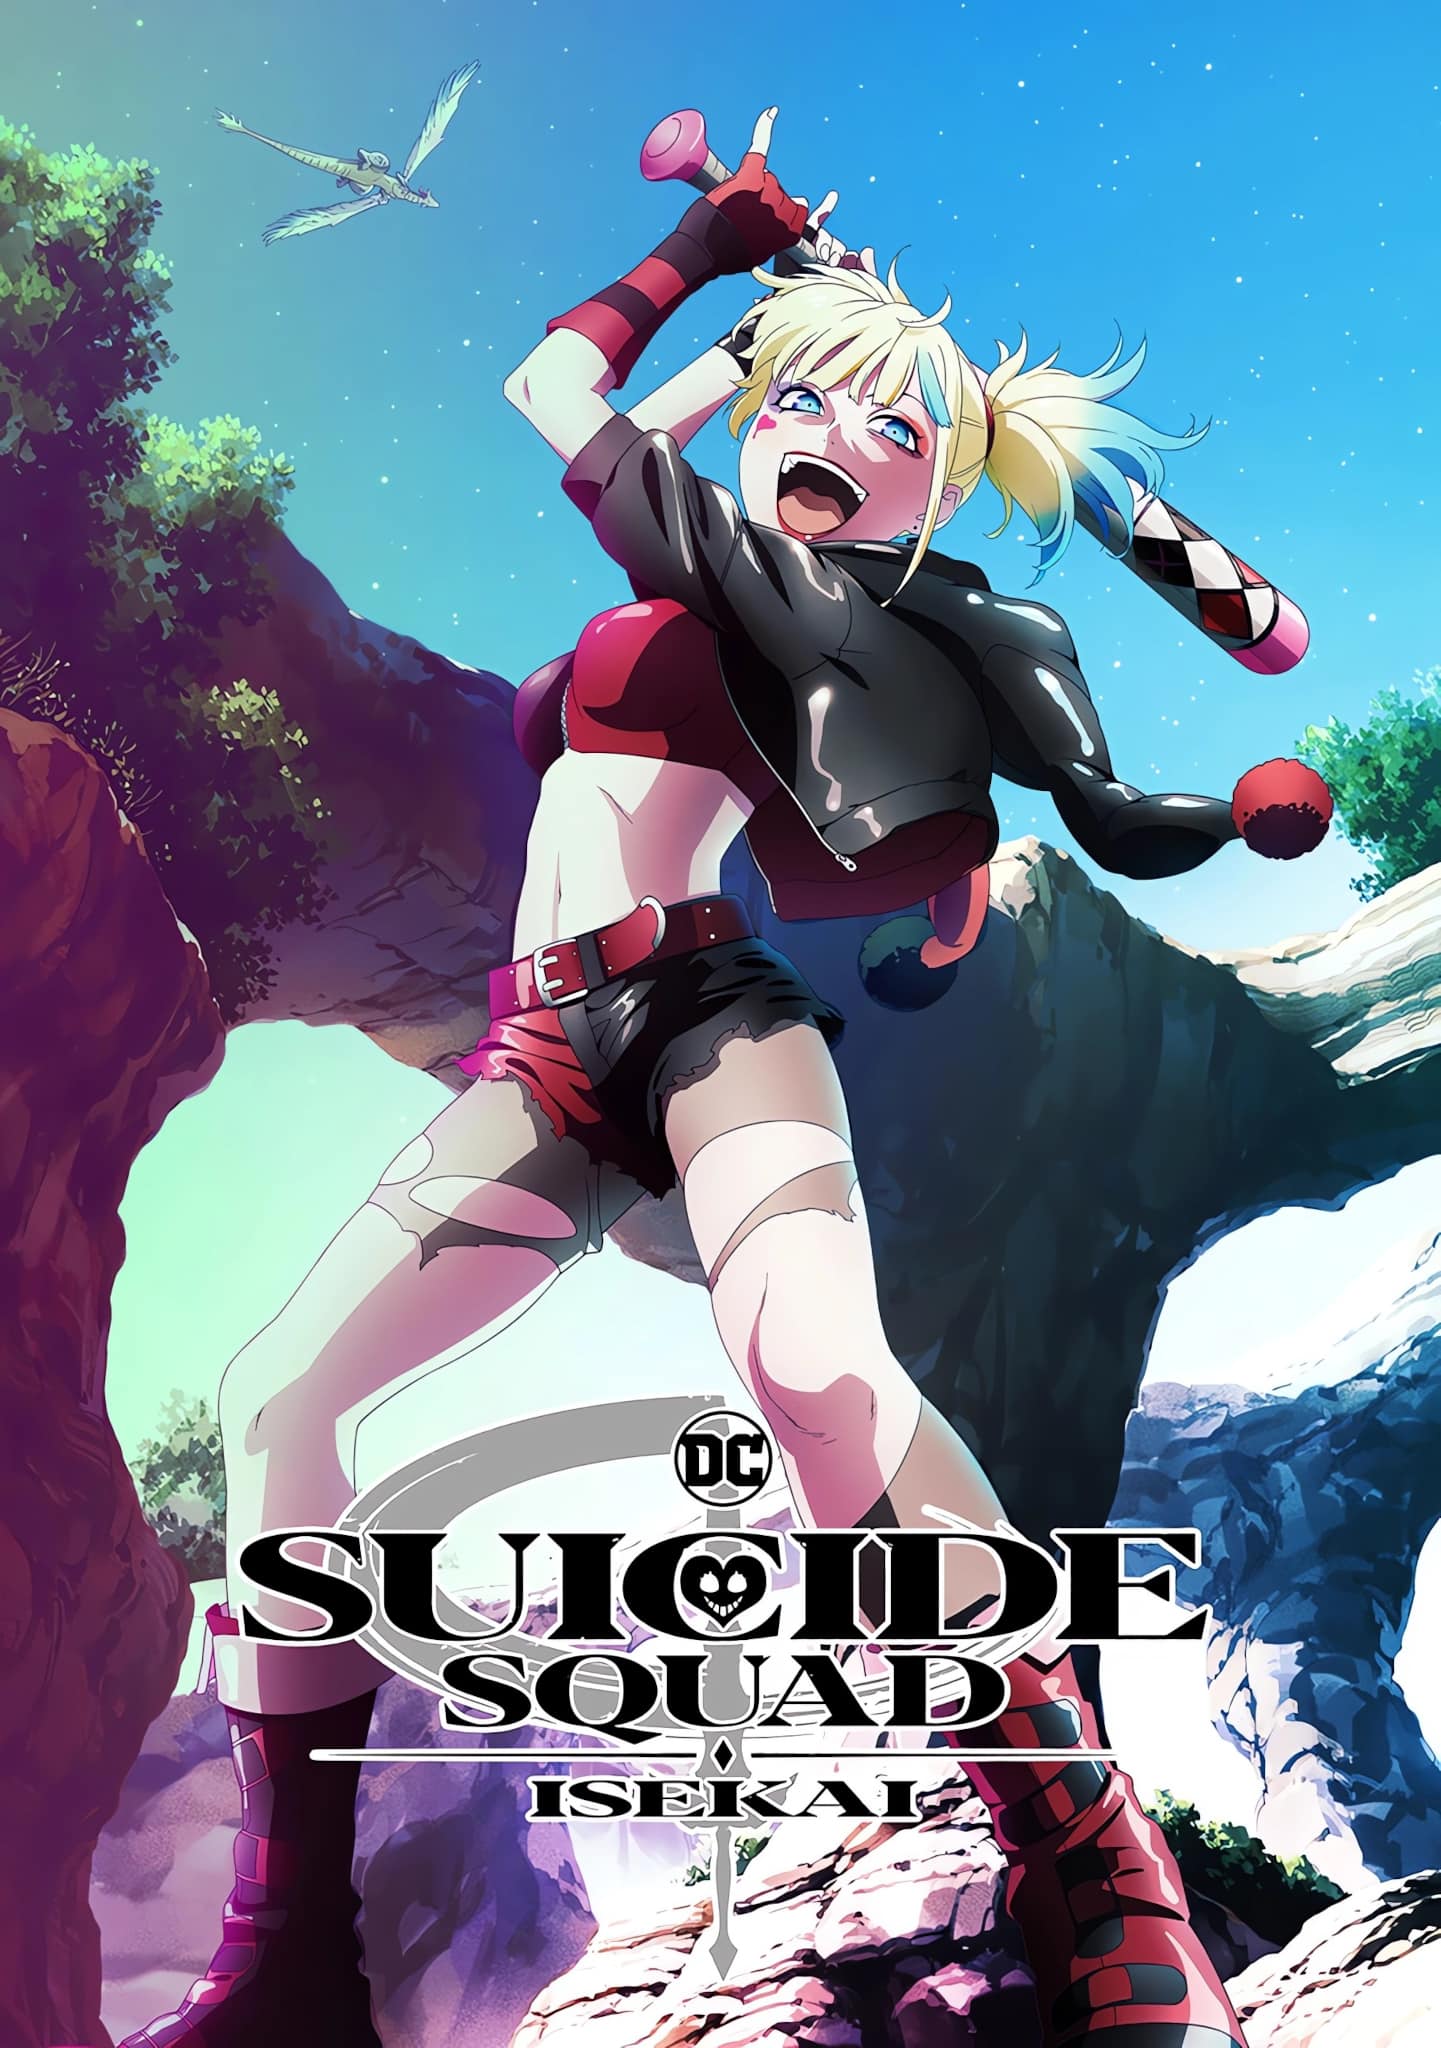 Visuel spécial Harley Quinn pour l'anime SUICIDE SQUAD ISEKAI